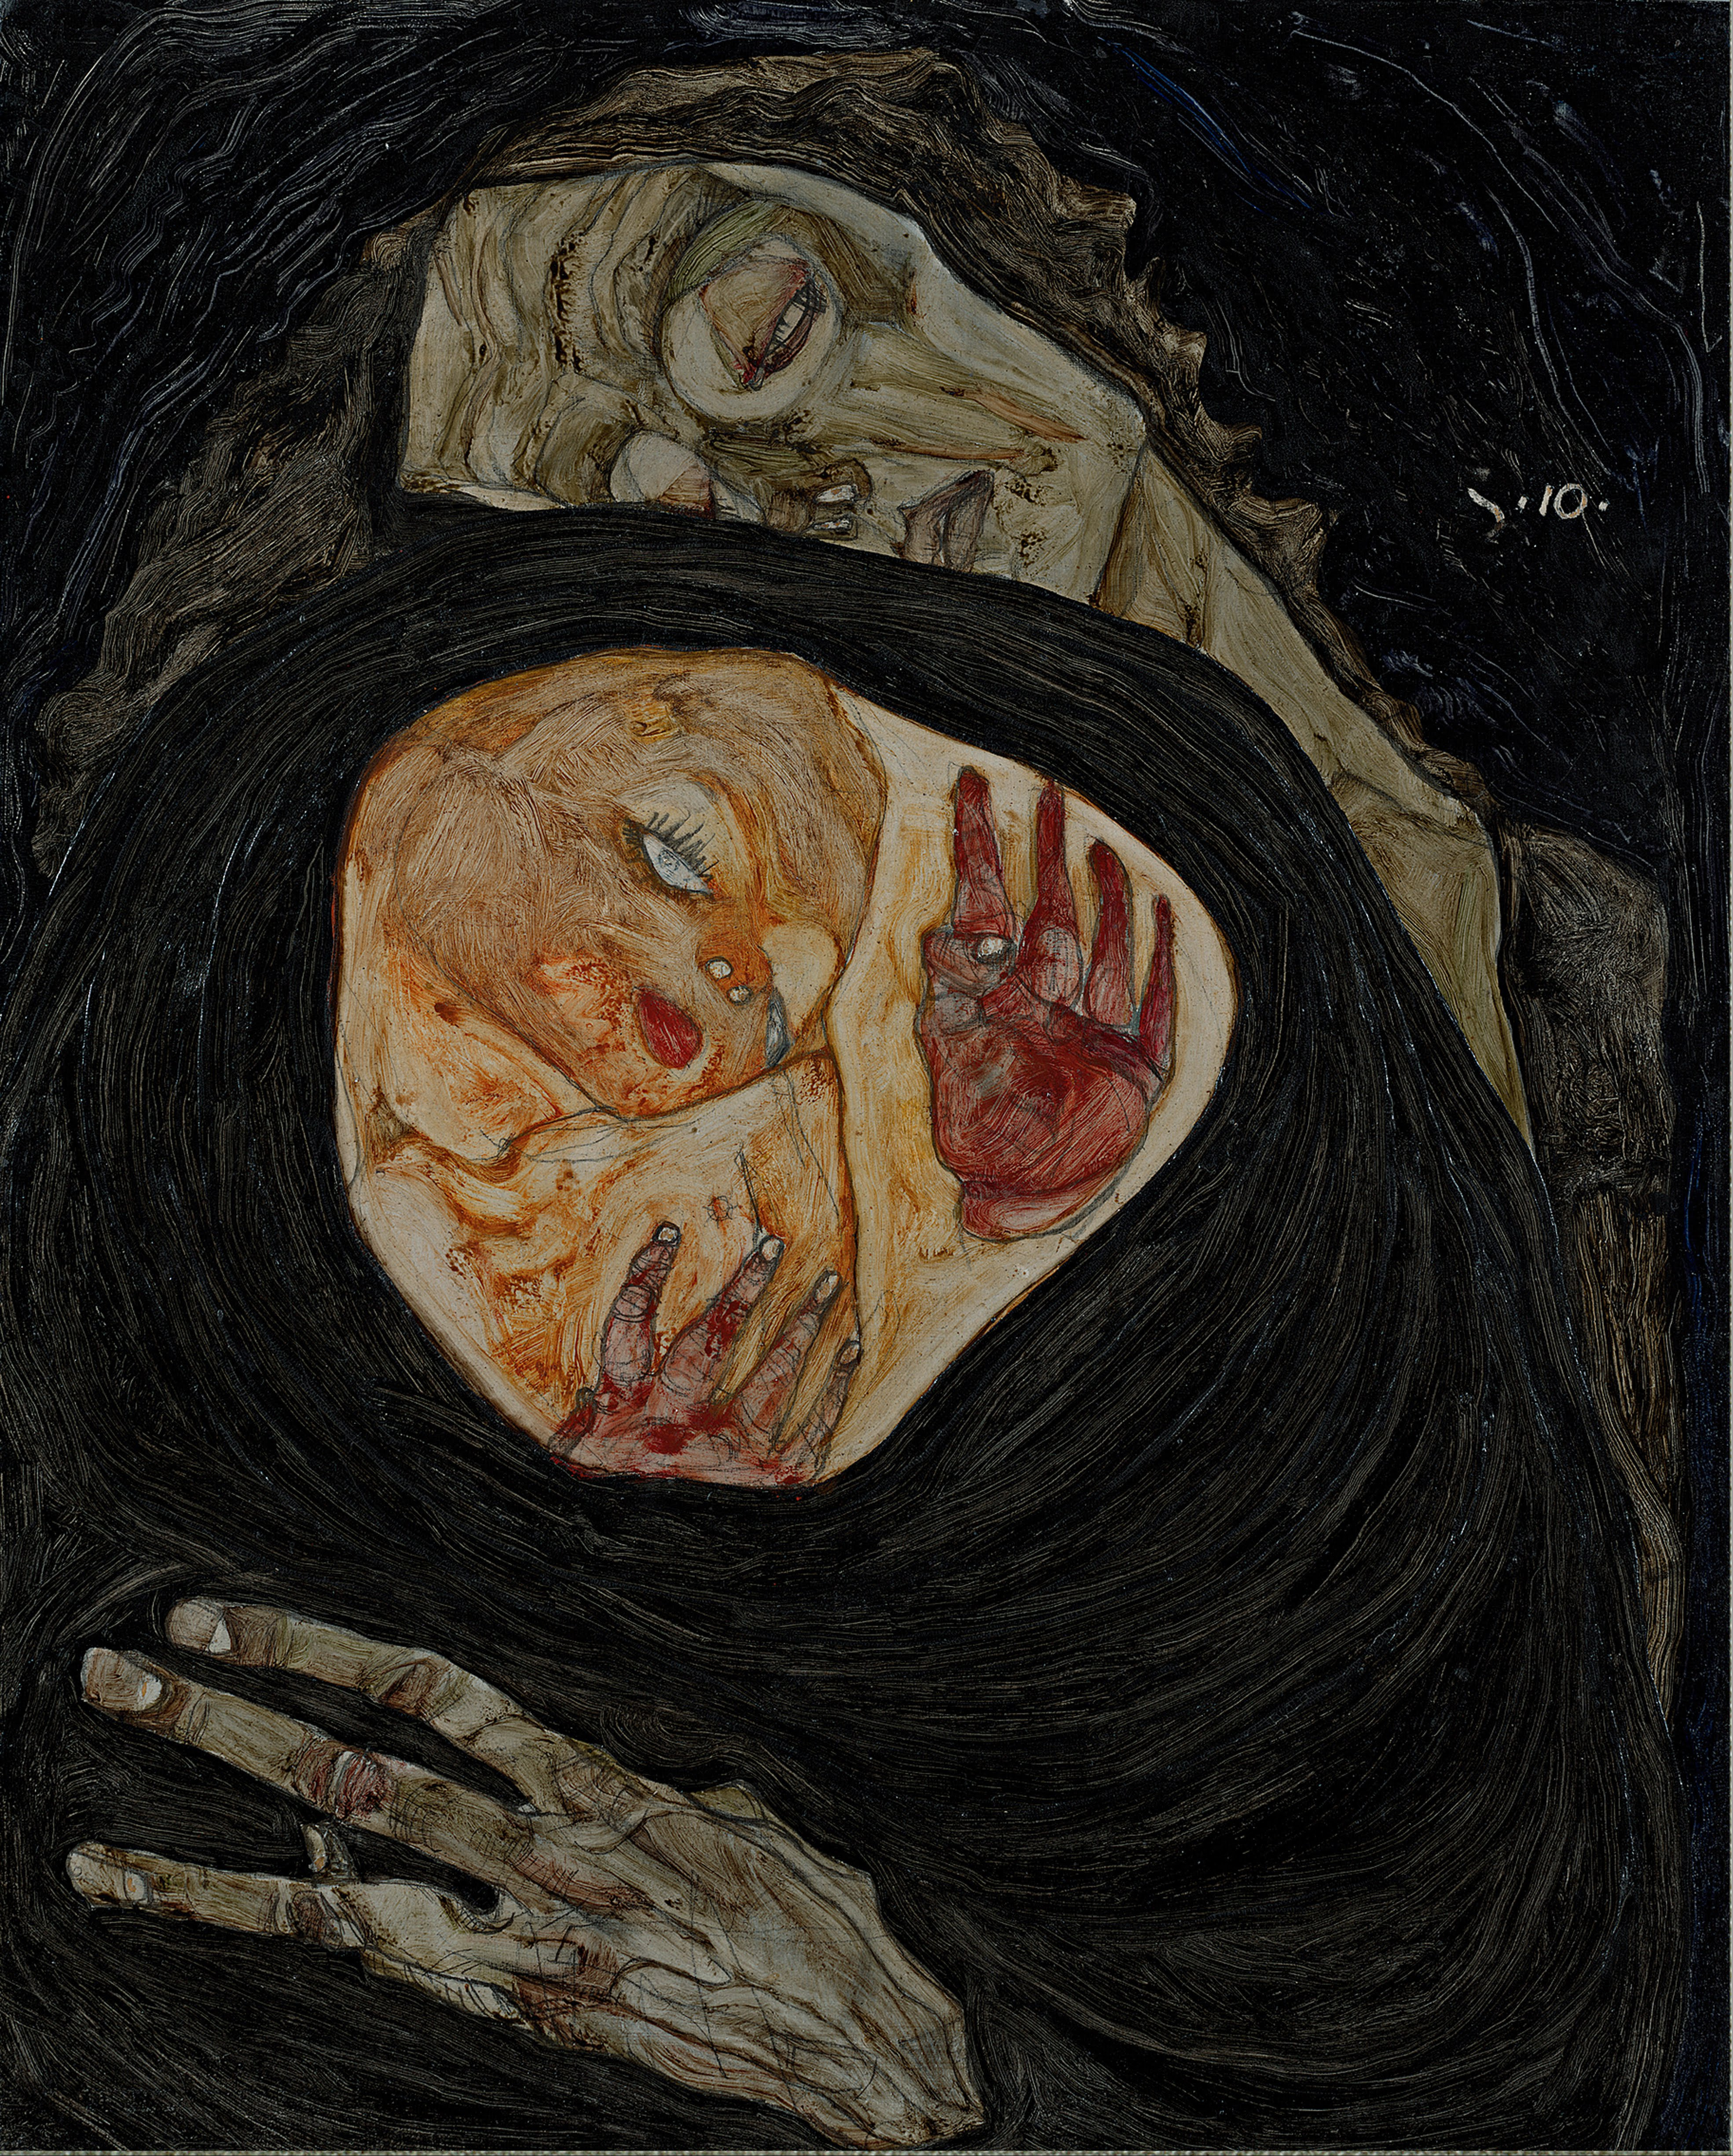 Mãe Morta by Egon Schiele - c. 1910 coleção privada